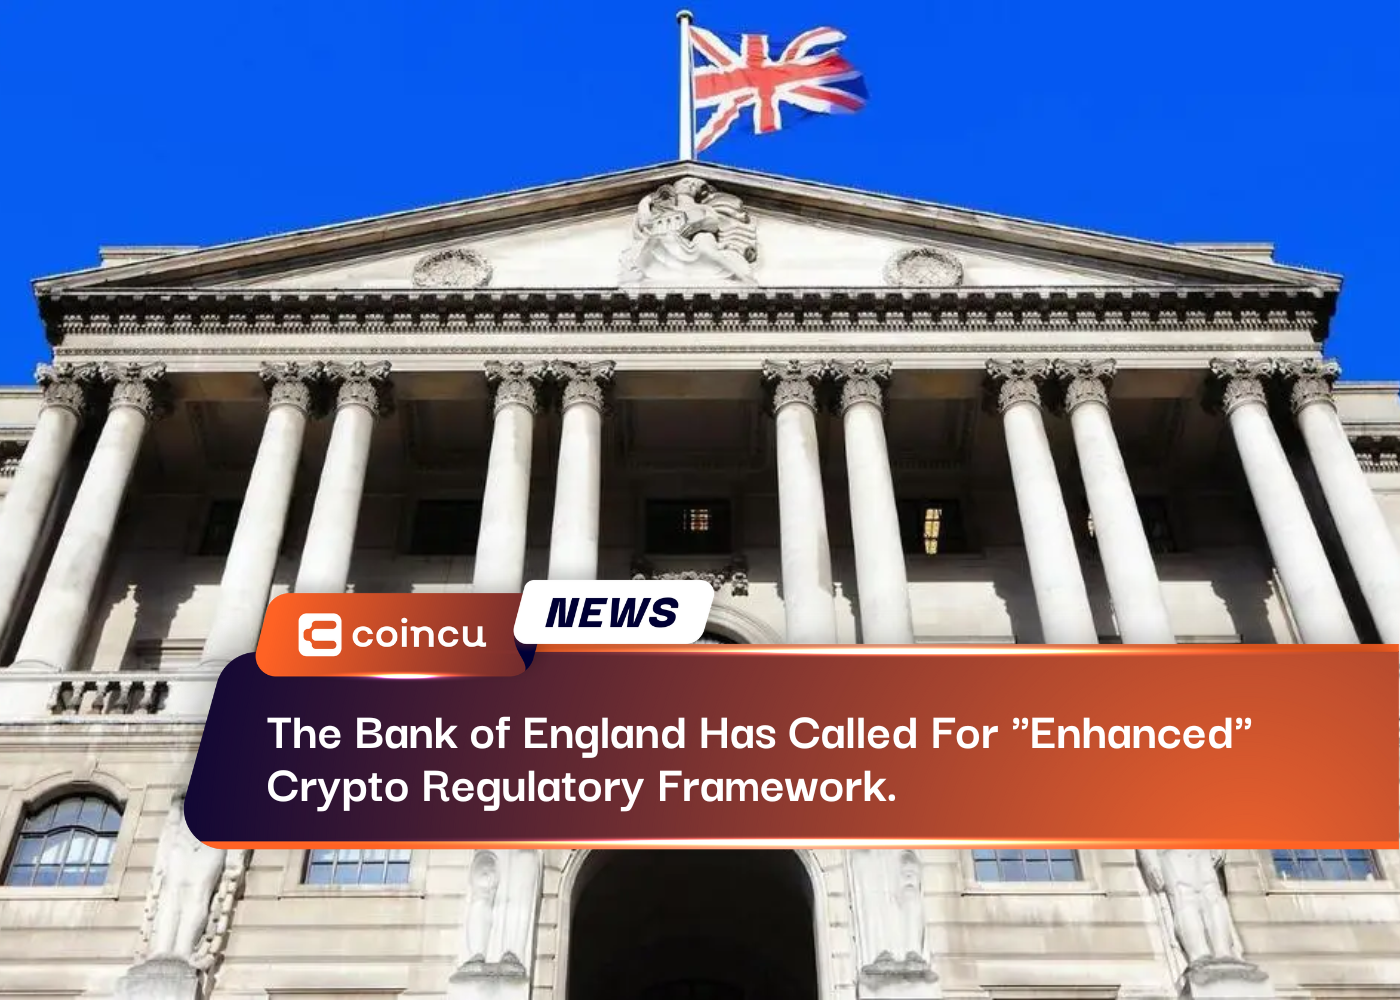 영국 은행은 "향상된" 암호화폐 규제 프레임워크를 요구했습니다.